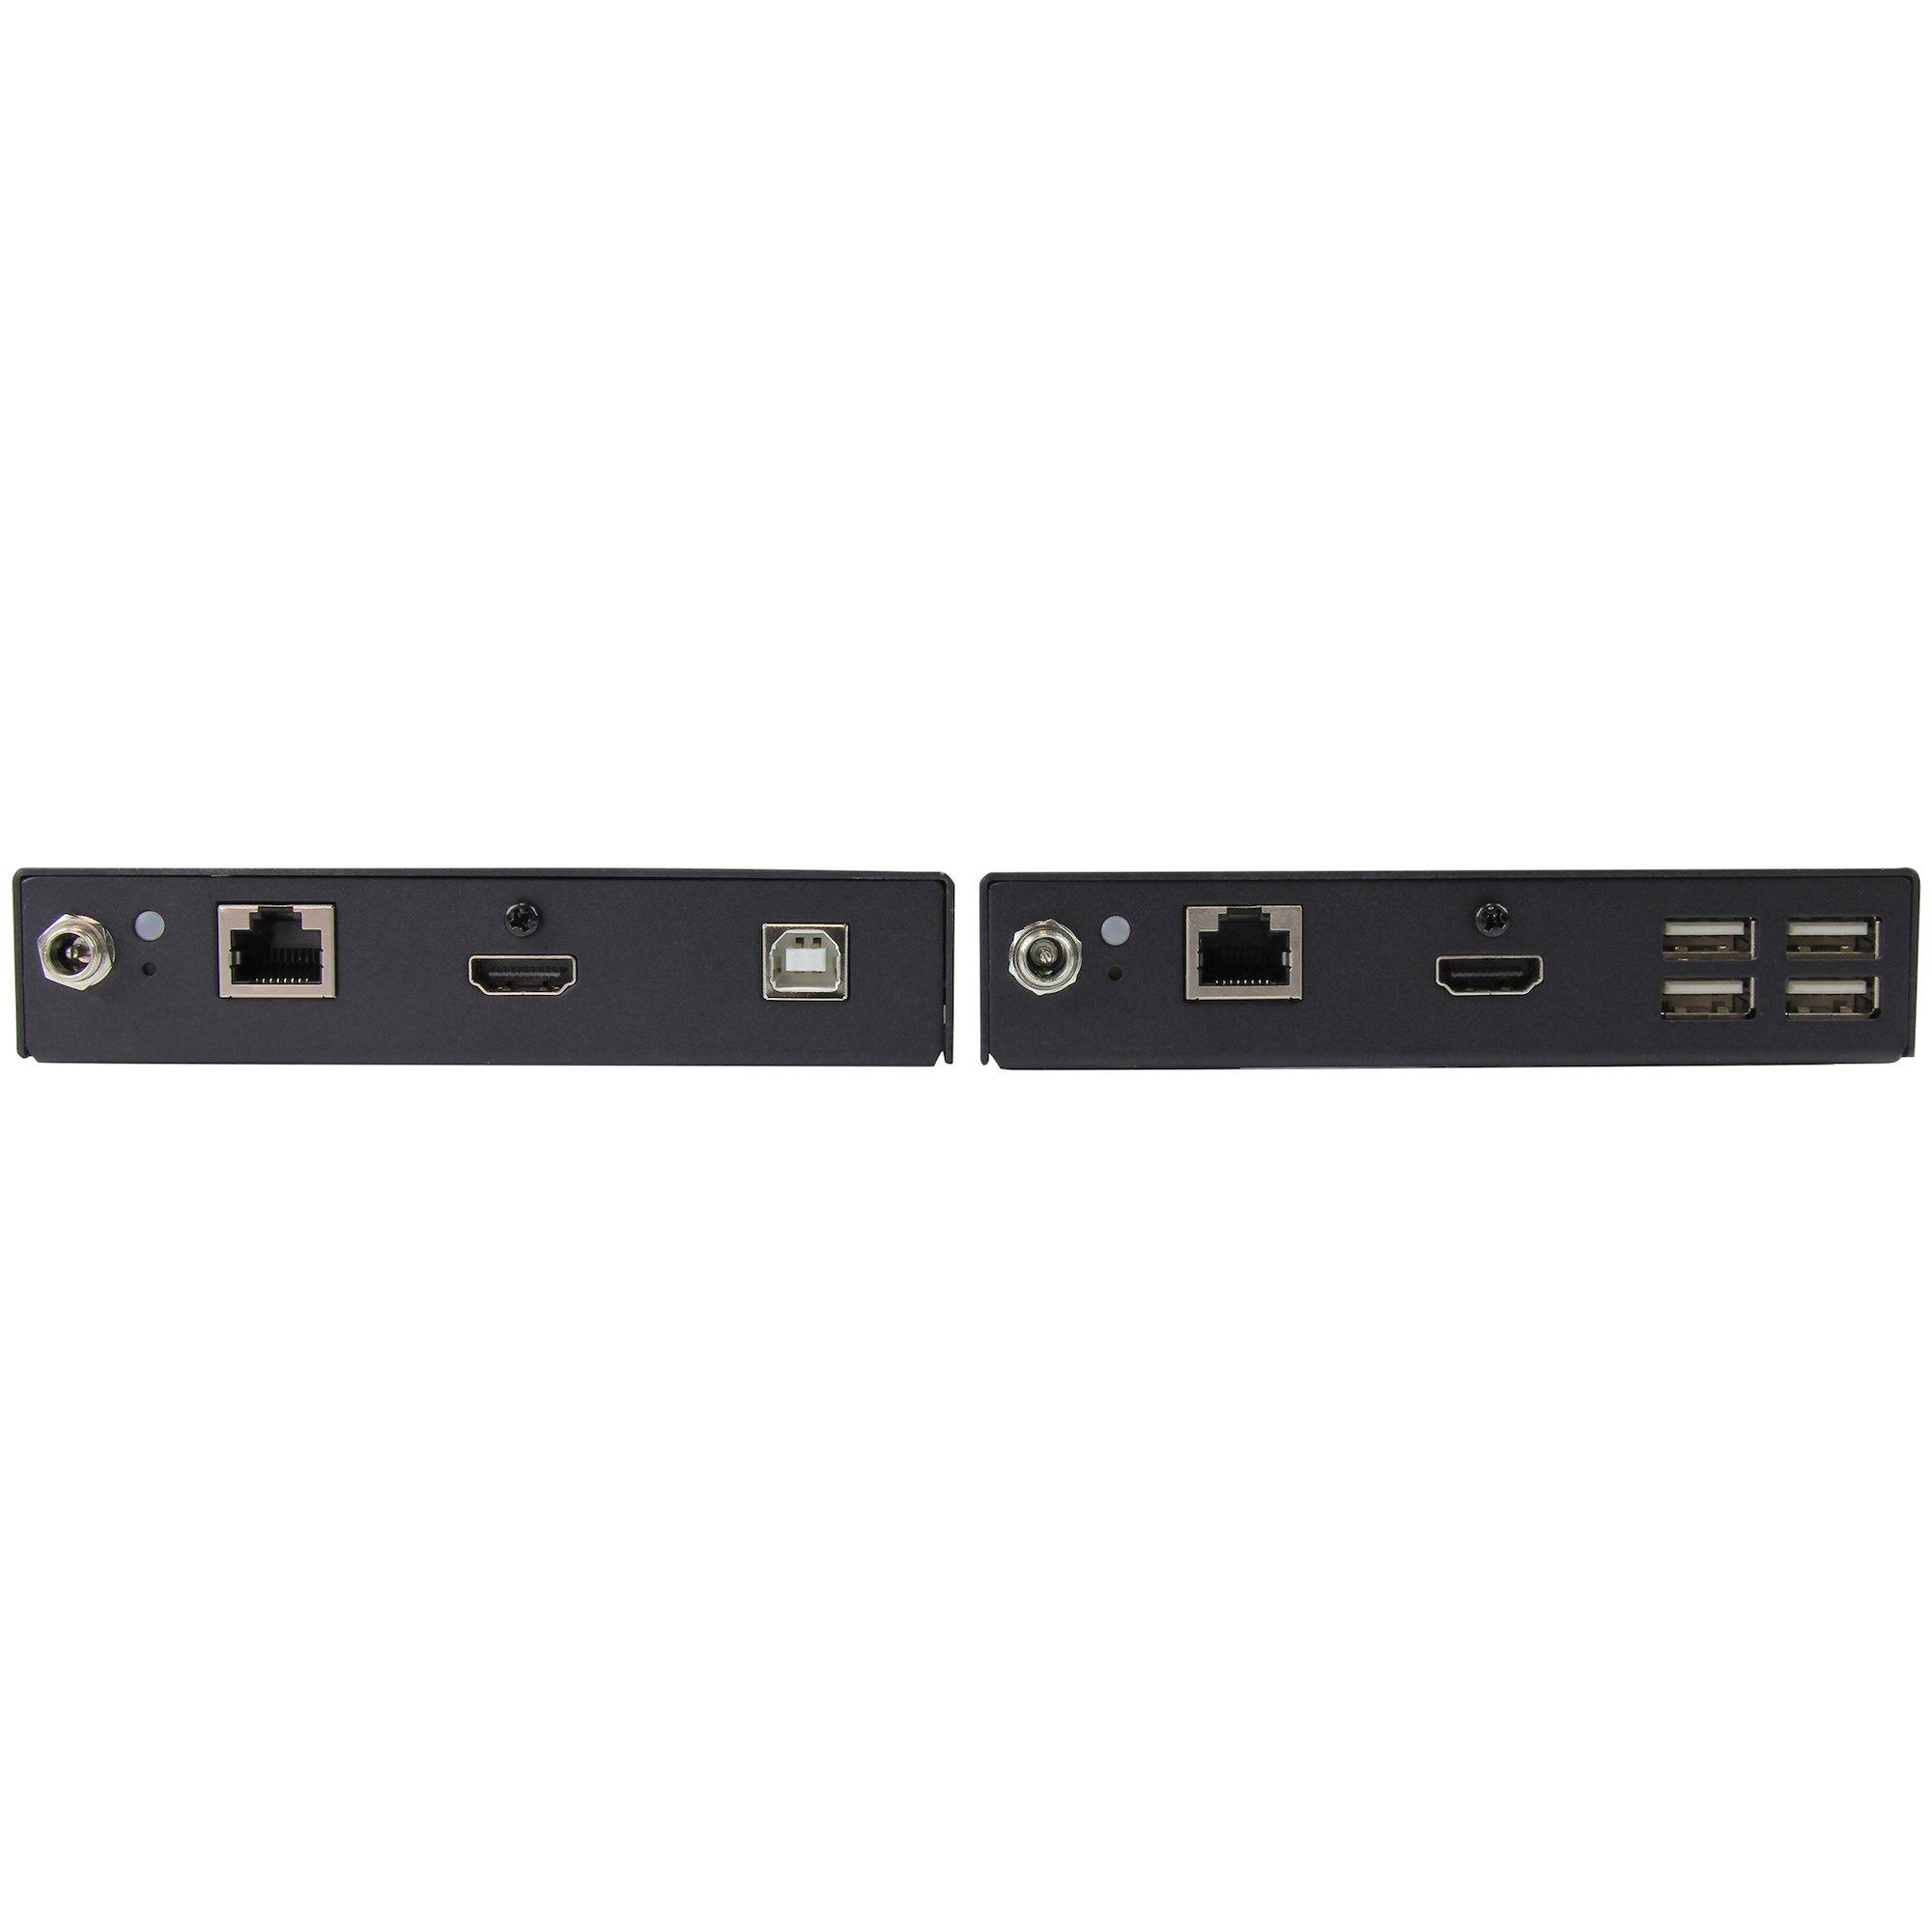 Rca Informatique - image du produit : HDMI EXTENDER OVER CAT6 OVER IP LAN ETHERNET EXTENDER